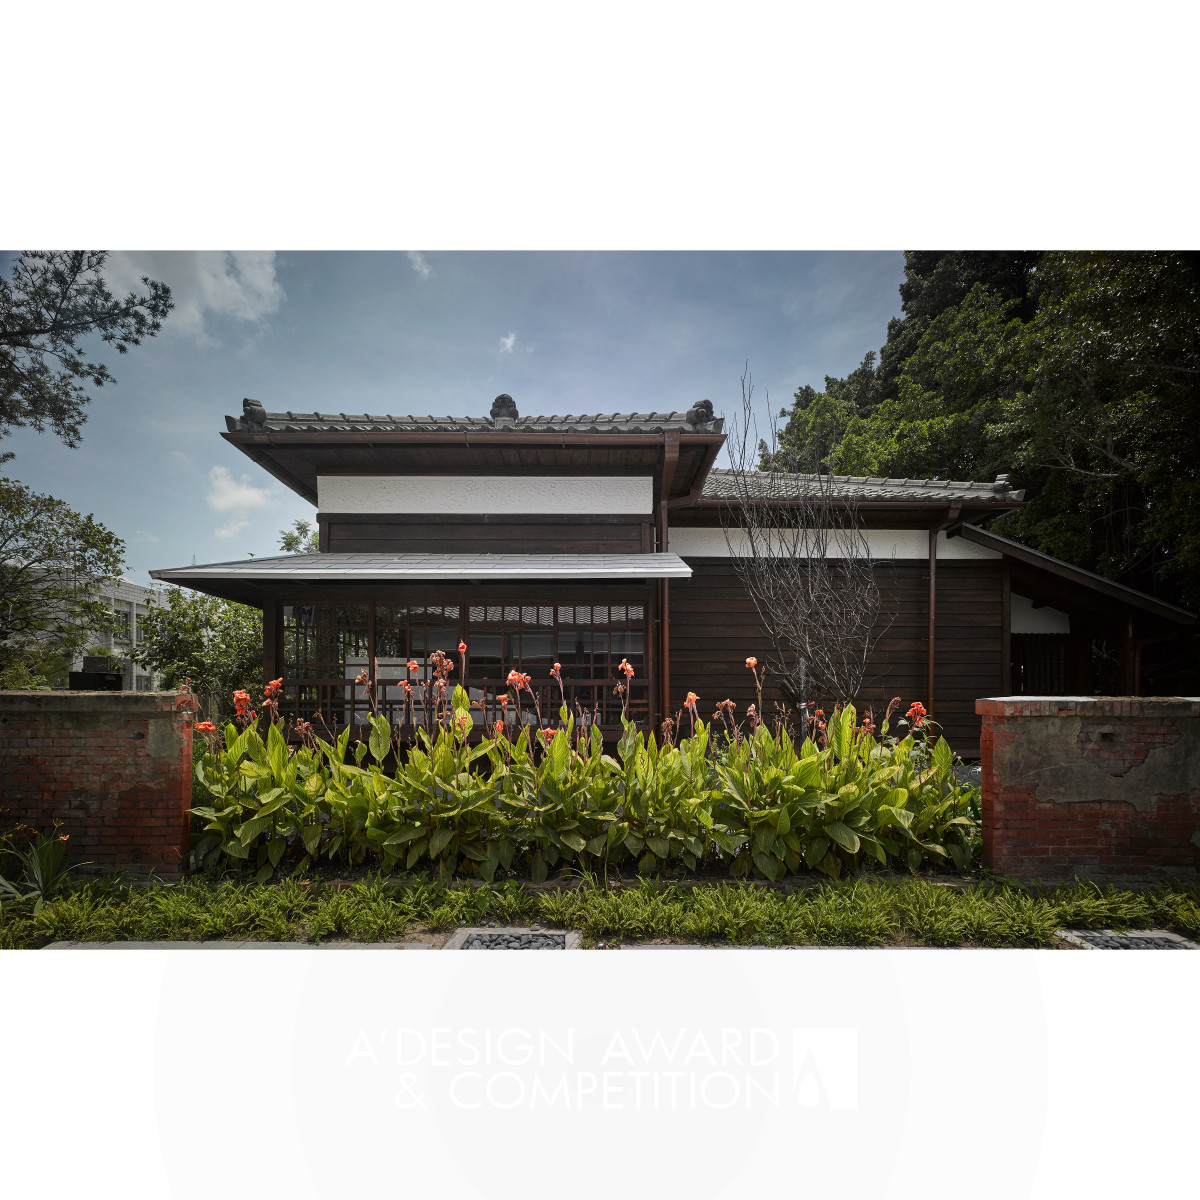 Taichung Literacy Museum en omringende landschapsparken: Een harmonieuze fusie van geschiedenis en openbare ruimte